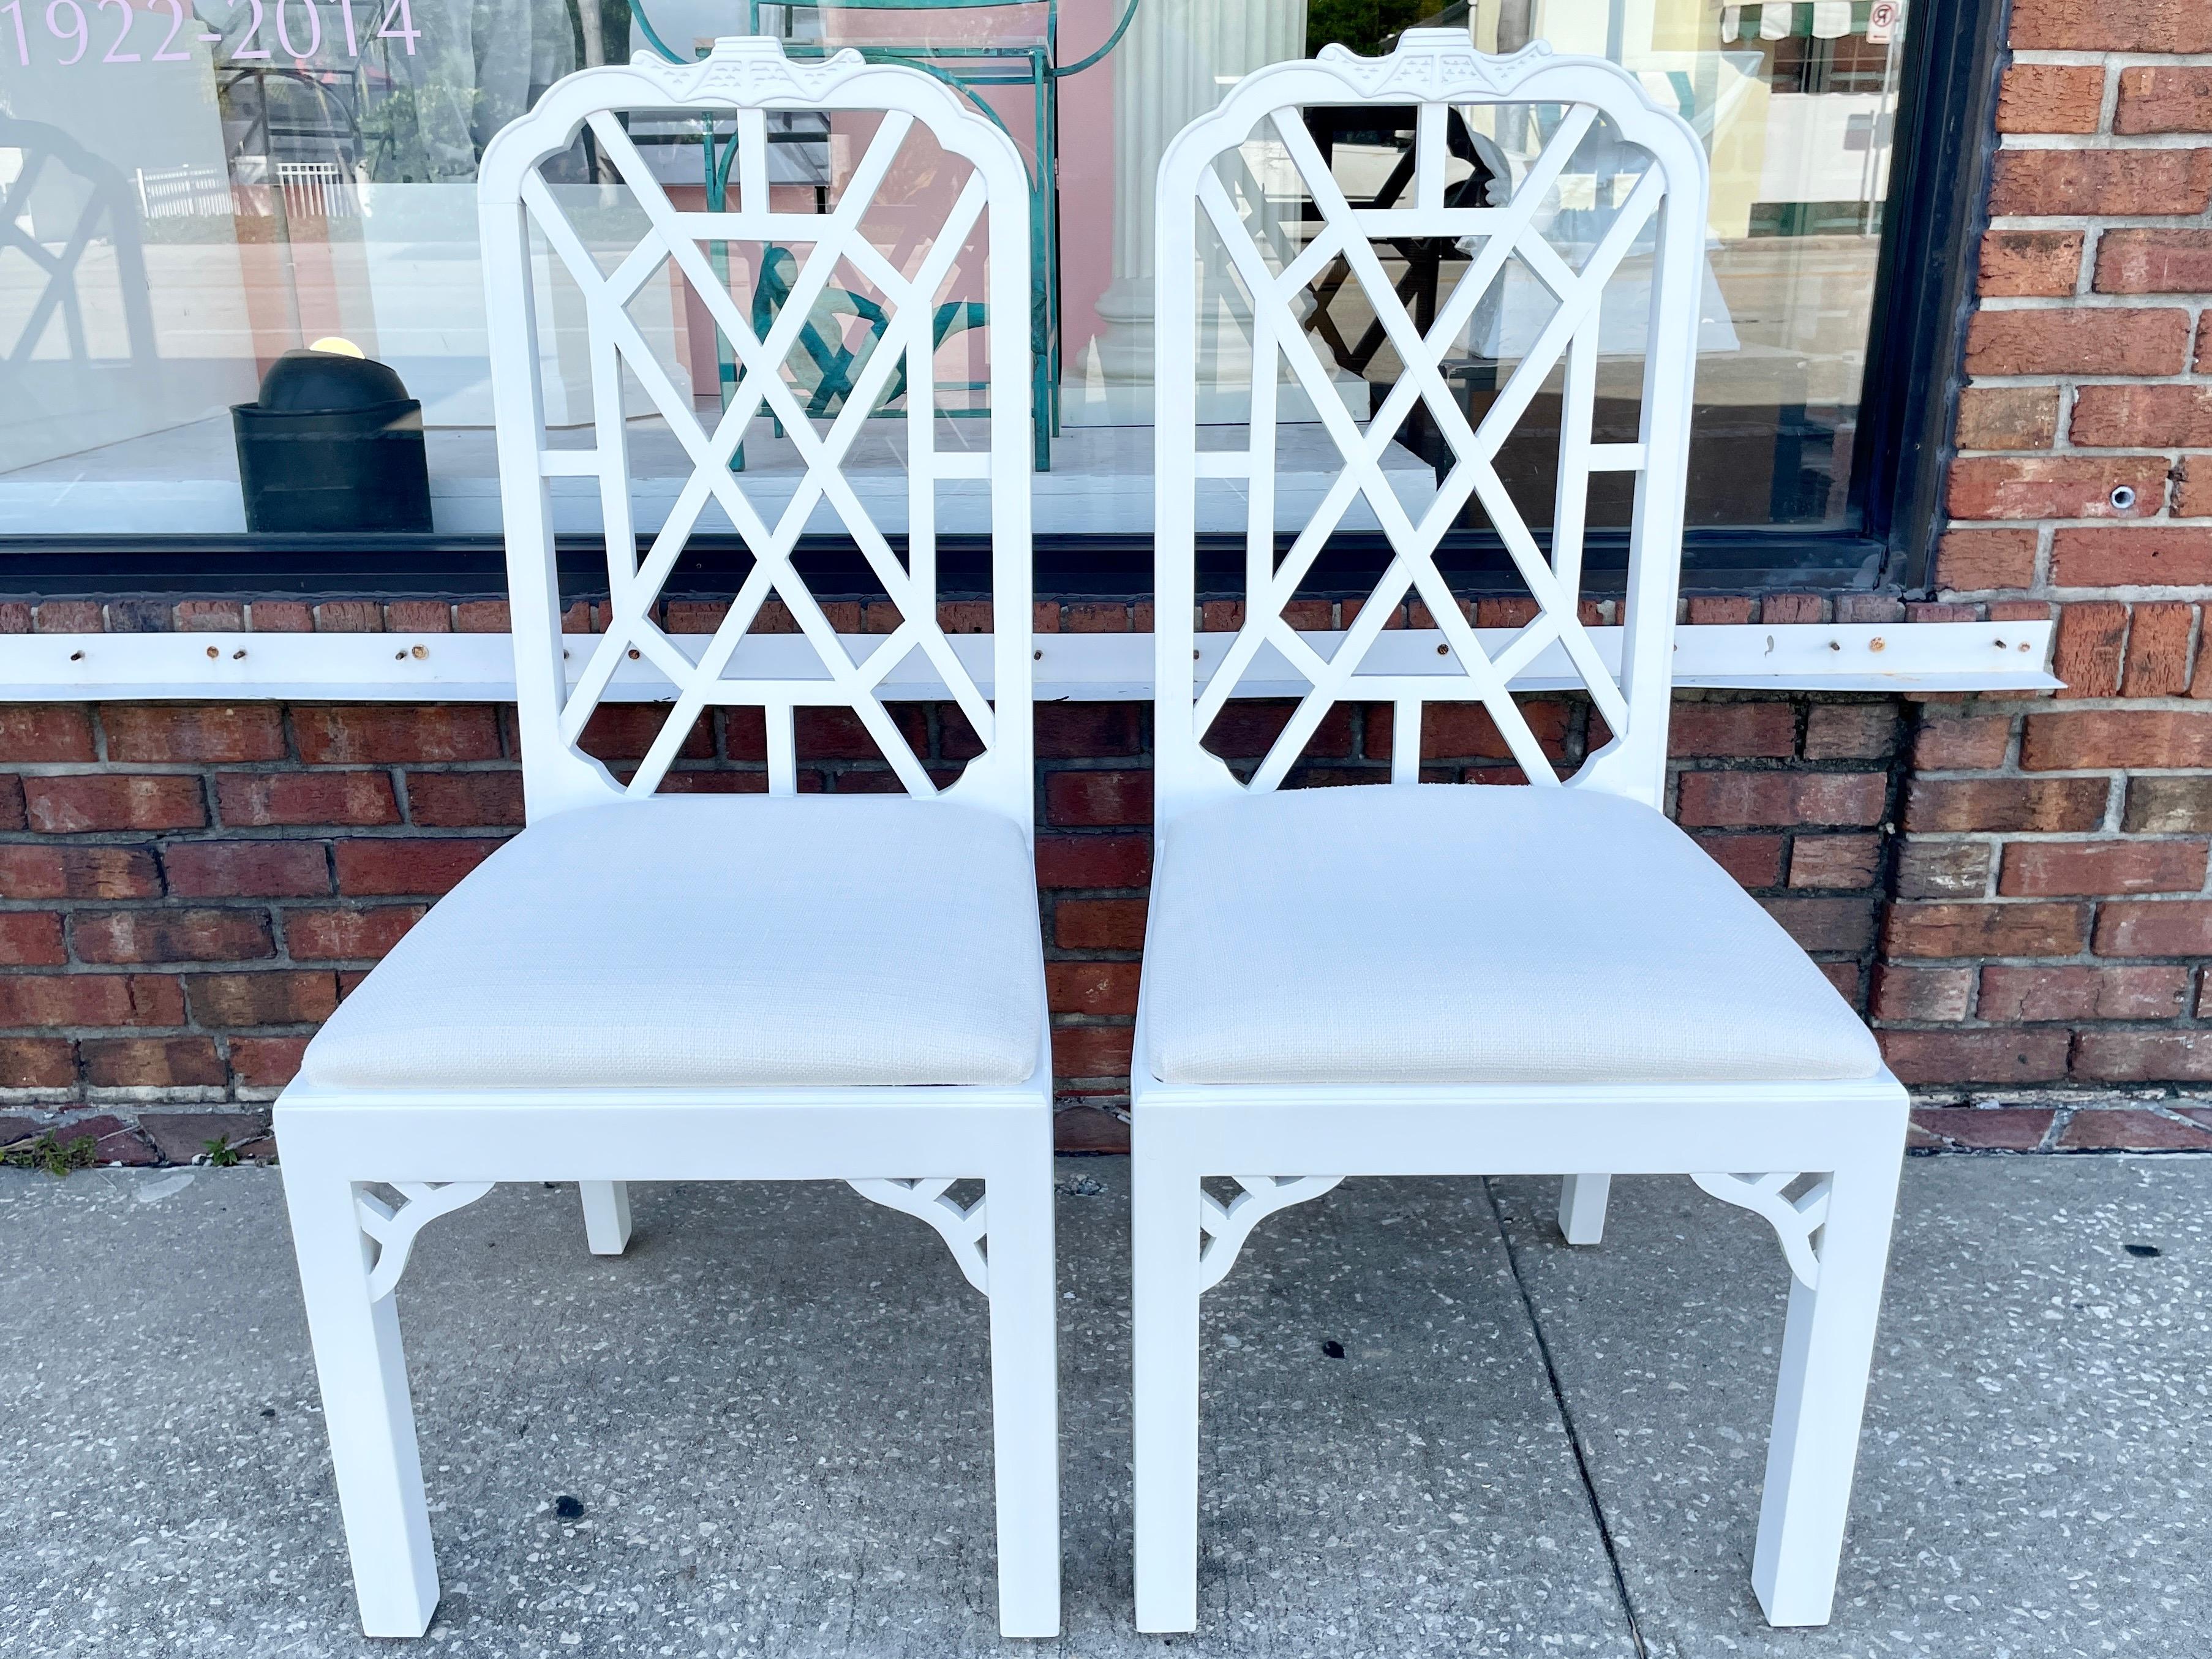 Fabelhaftes Paar frisch lackierter, weißer Boho-Chic-Esszimmerstühle mit neuen Todd Hase Textiles. Eine tolle Ergänzung für Ihr vom Boho-Chic inspiriertes Zuhause.

Wir haben ein passendes Paar von Sesseln in unserem Angebot, so sammeln Sie das Set!